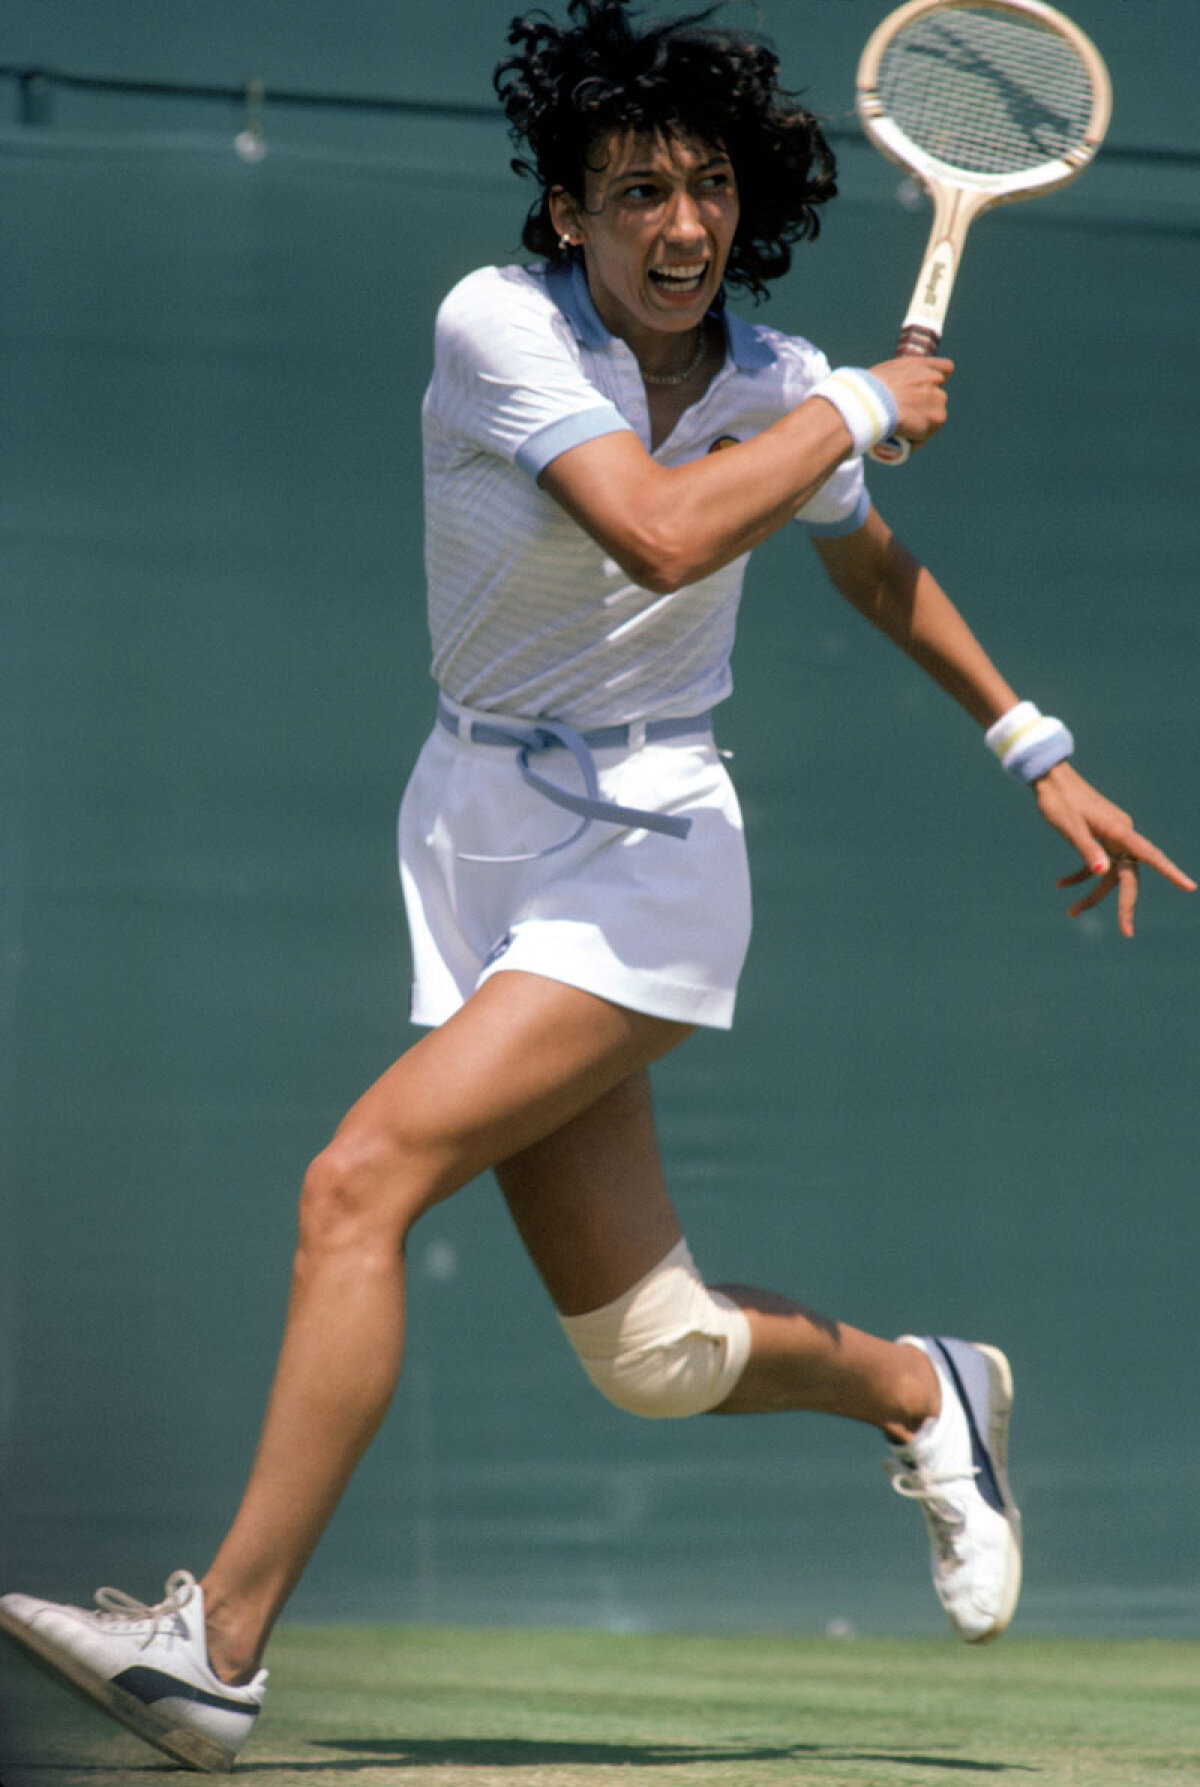 Virginia Ruzici, cîştigătoare la Roland Garros în 1978: "Pentru mine Steffi Graf e cea mai mare jucătoare"